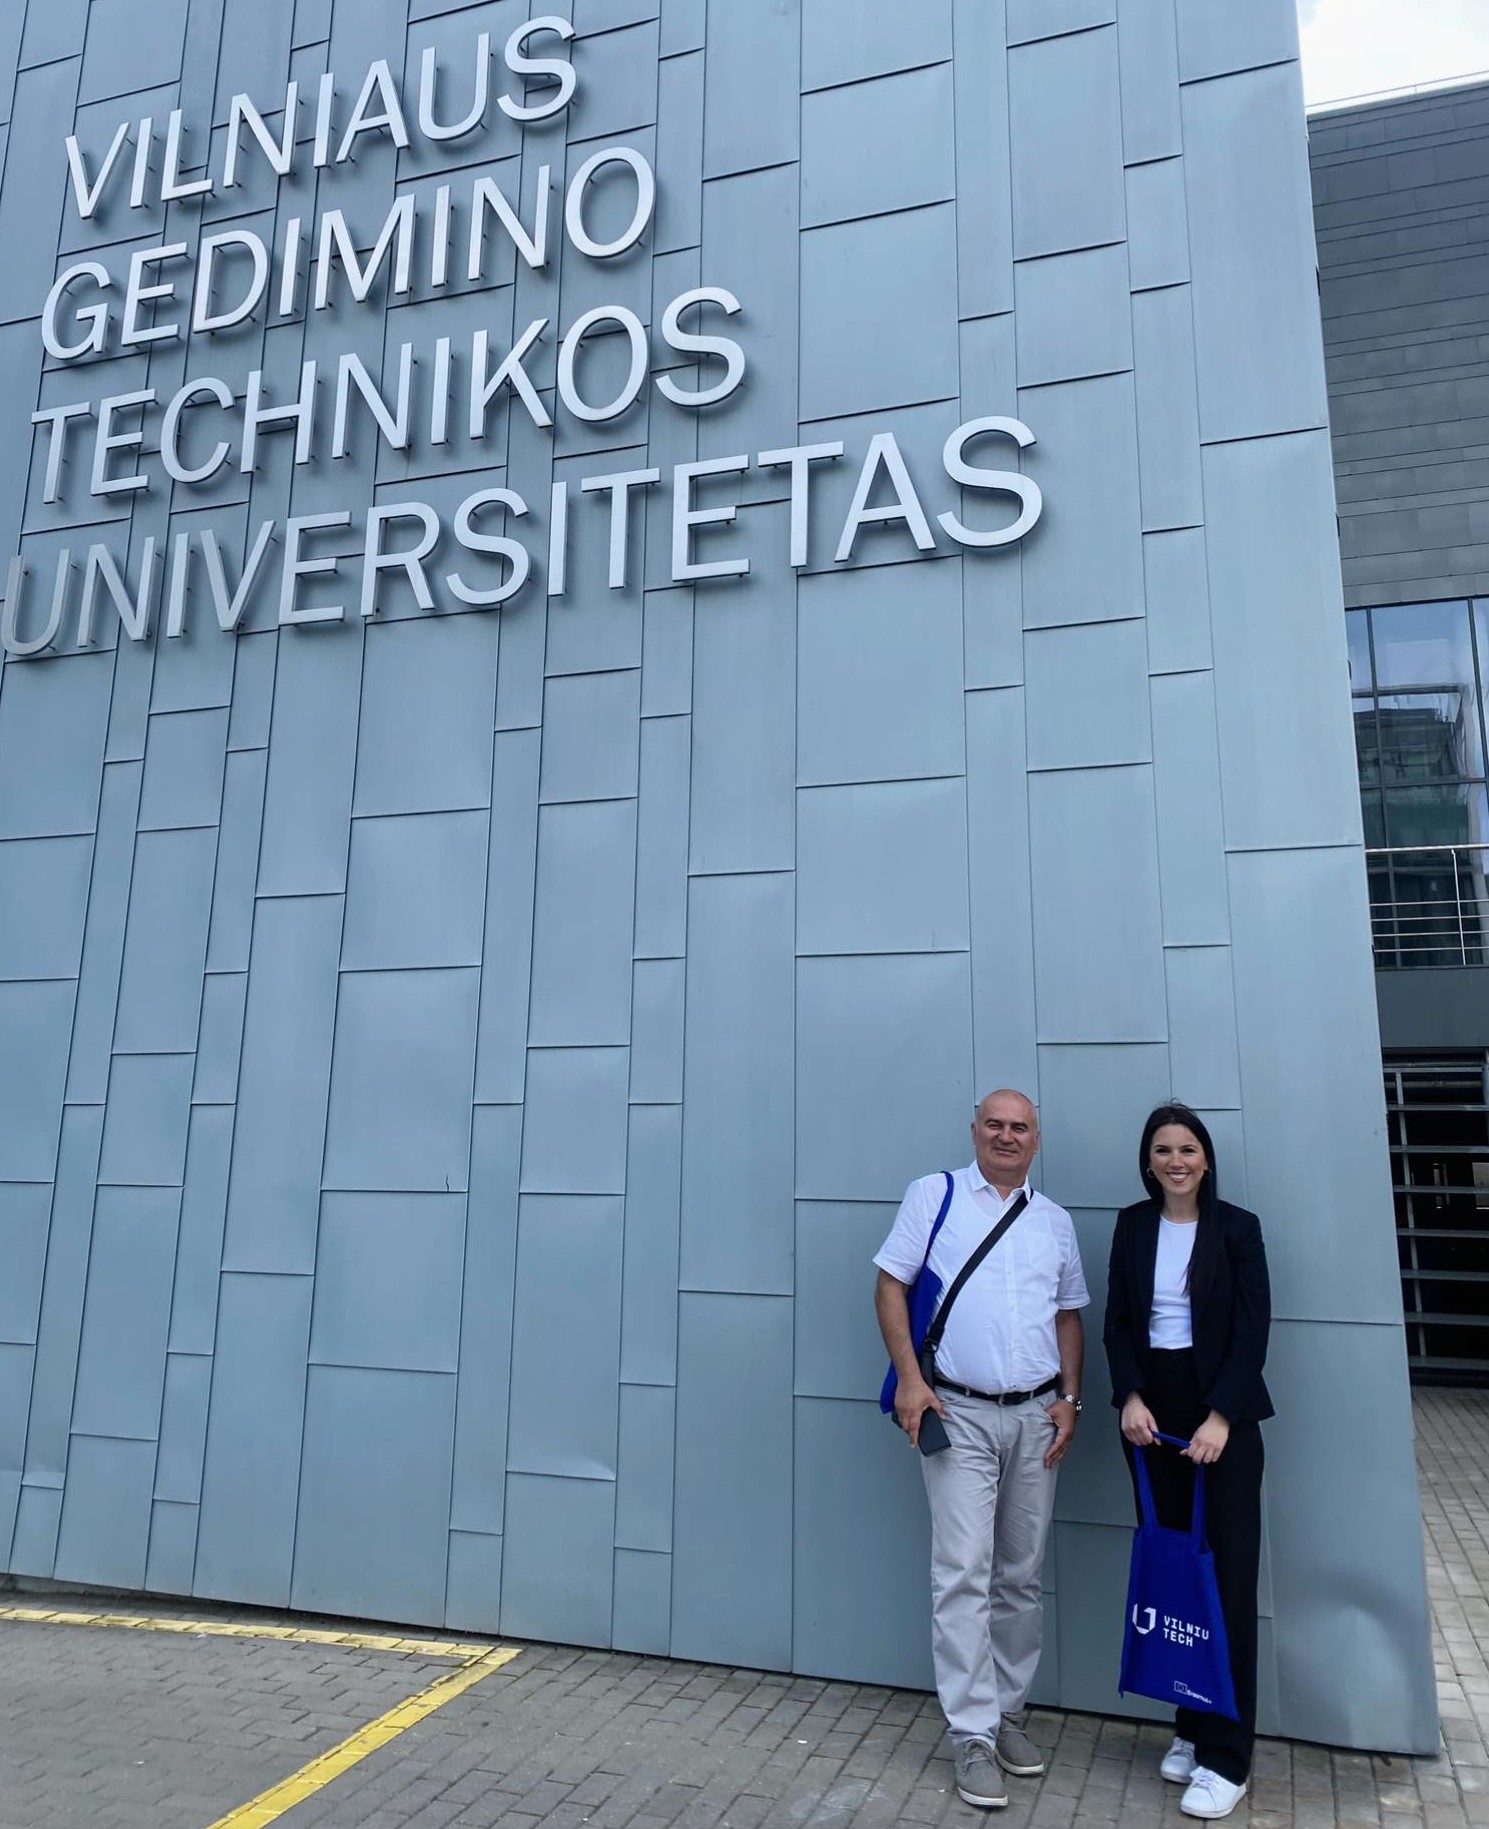 Erasmus Posjeta Vilnius Gediminas Tehničkom Univerzitetu U Litvaniji